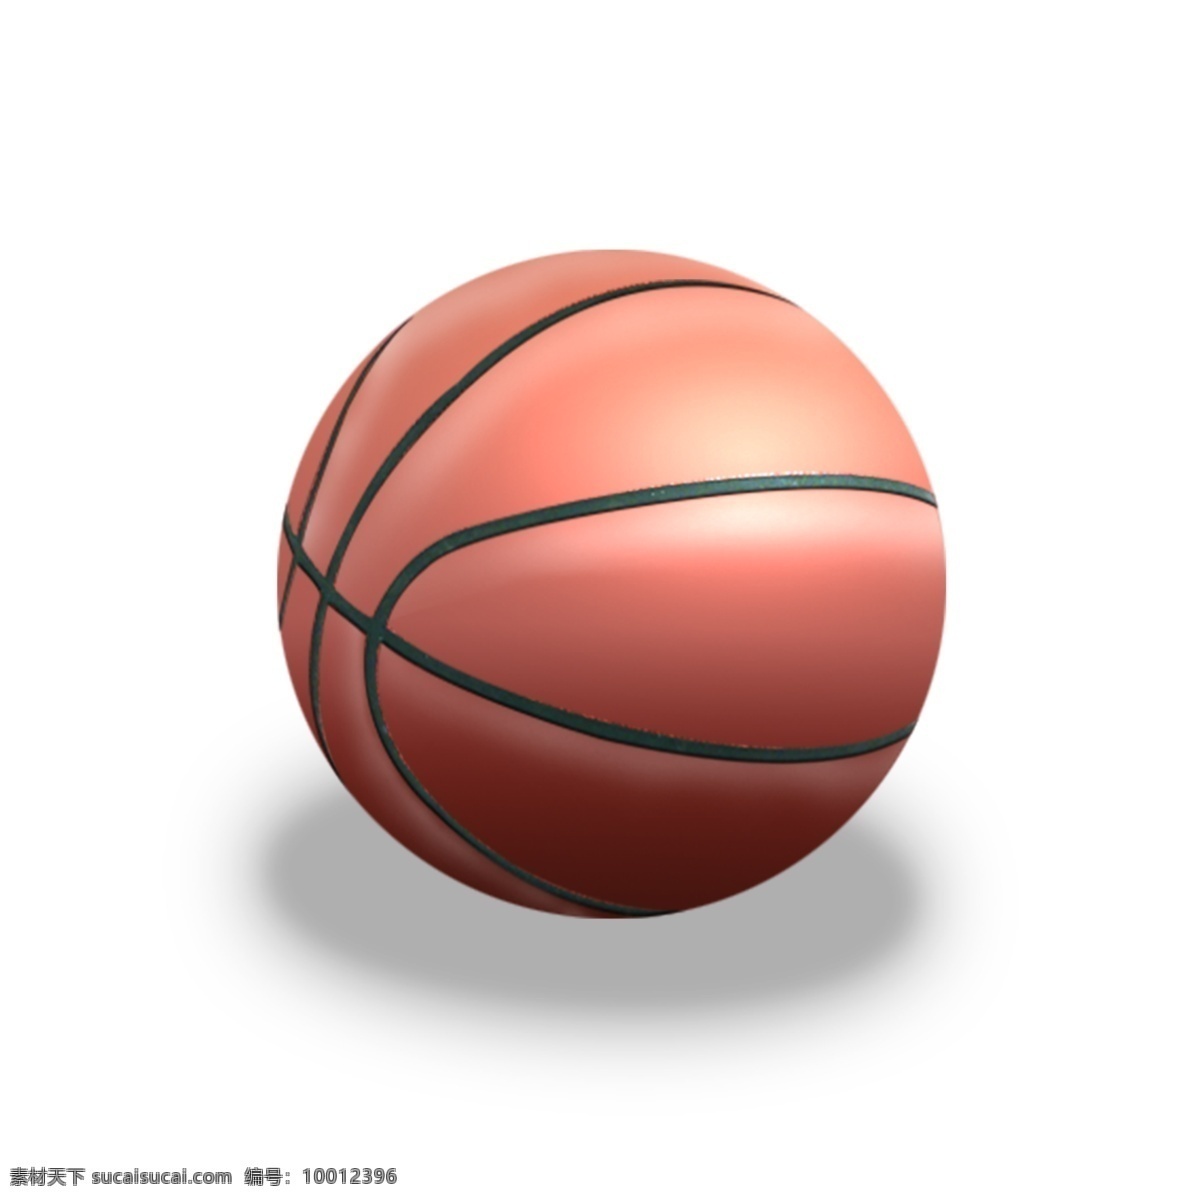 篮球 篮球矢量 篮球矢量图 矢量图 篮球素材 白色背景 文化艺术 体育运动